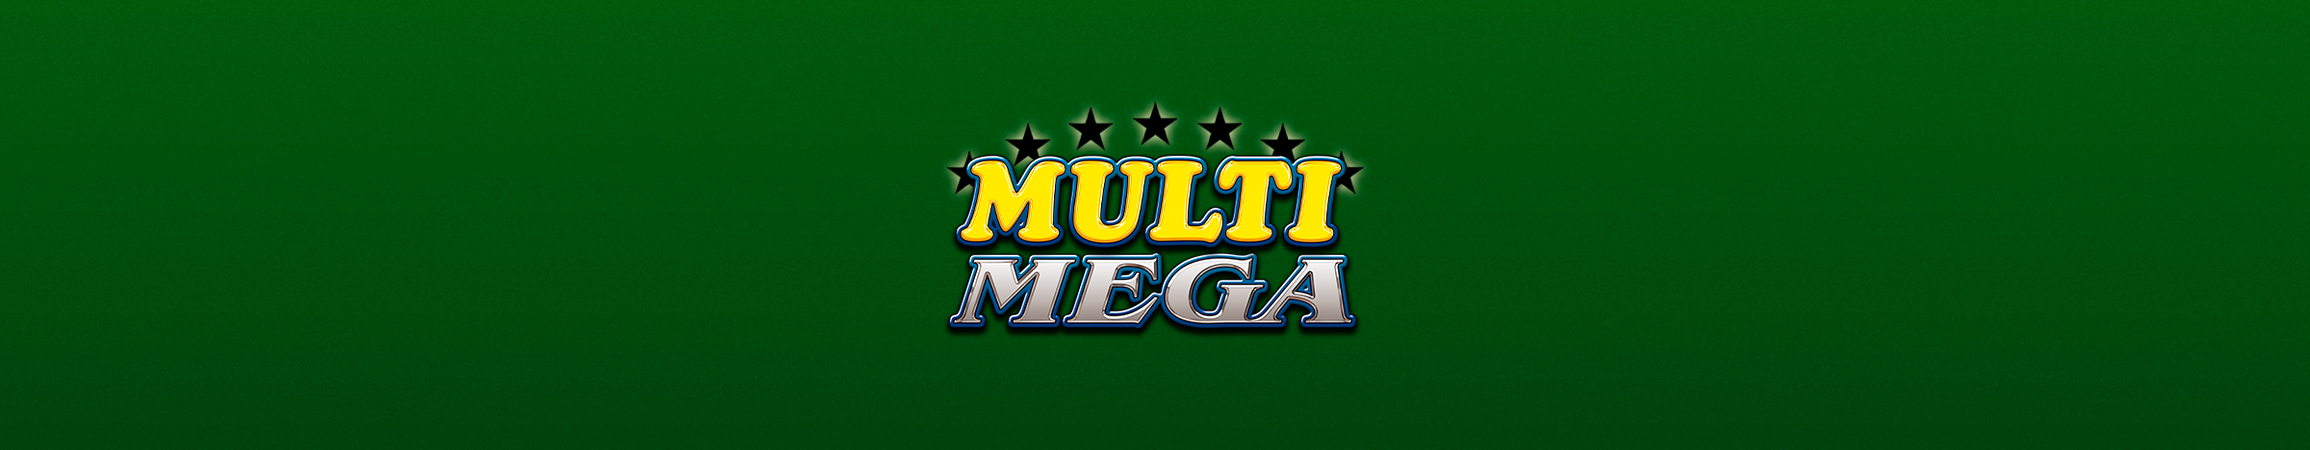 Multi Mega, the players’s favorite!